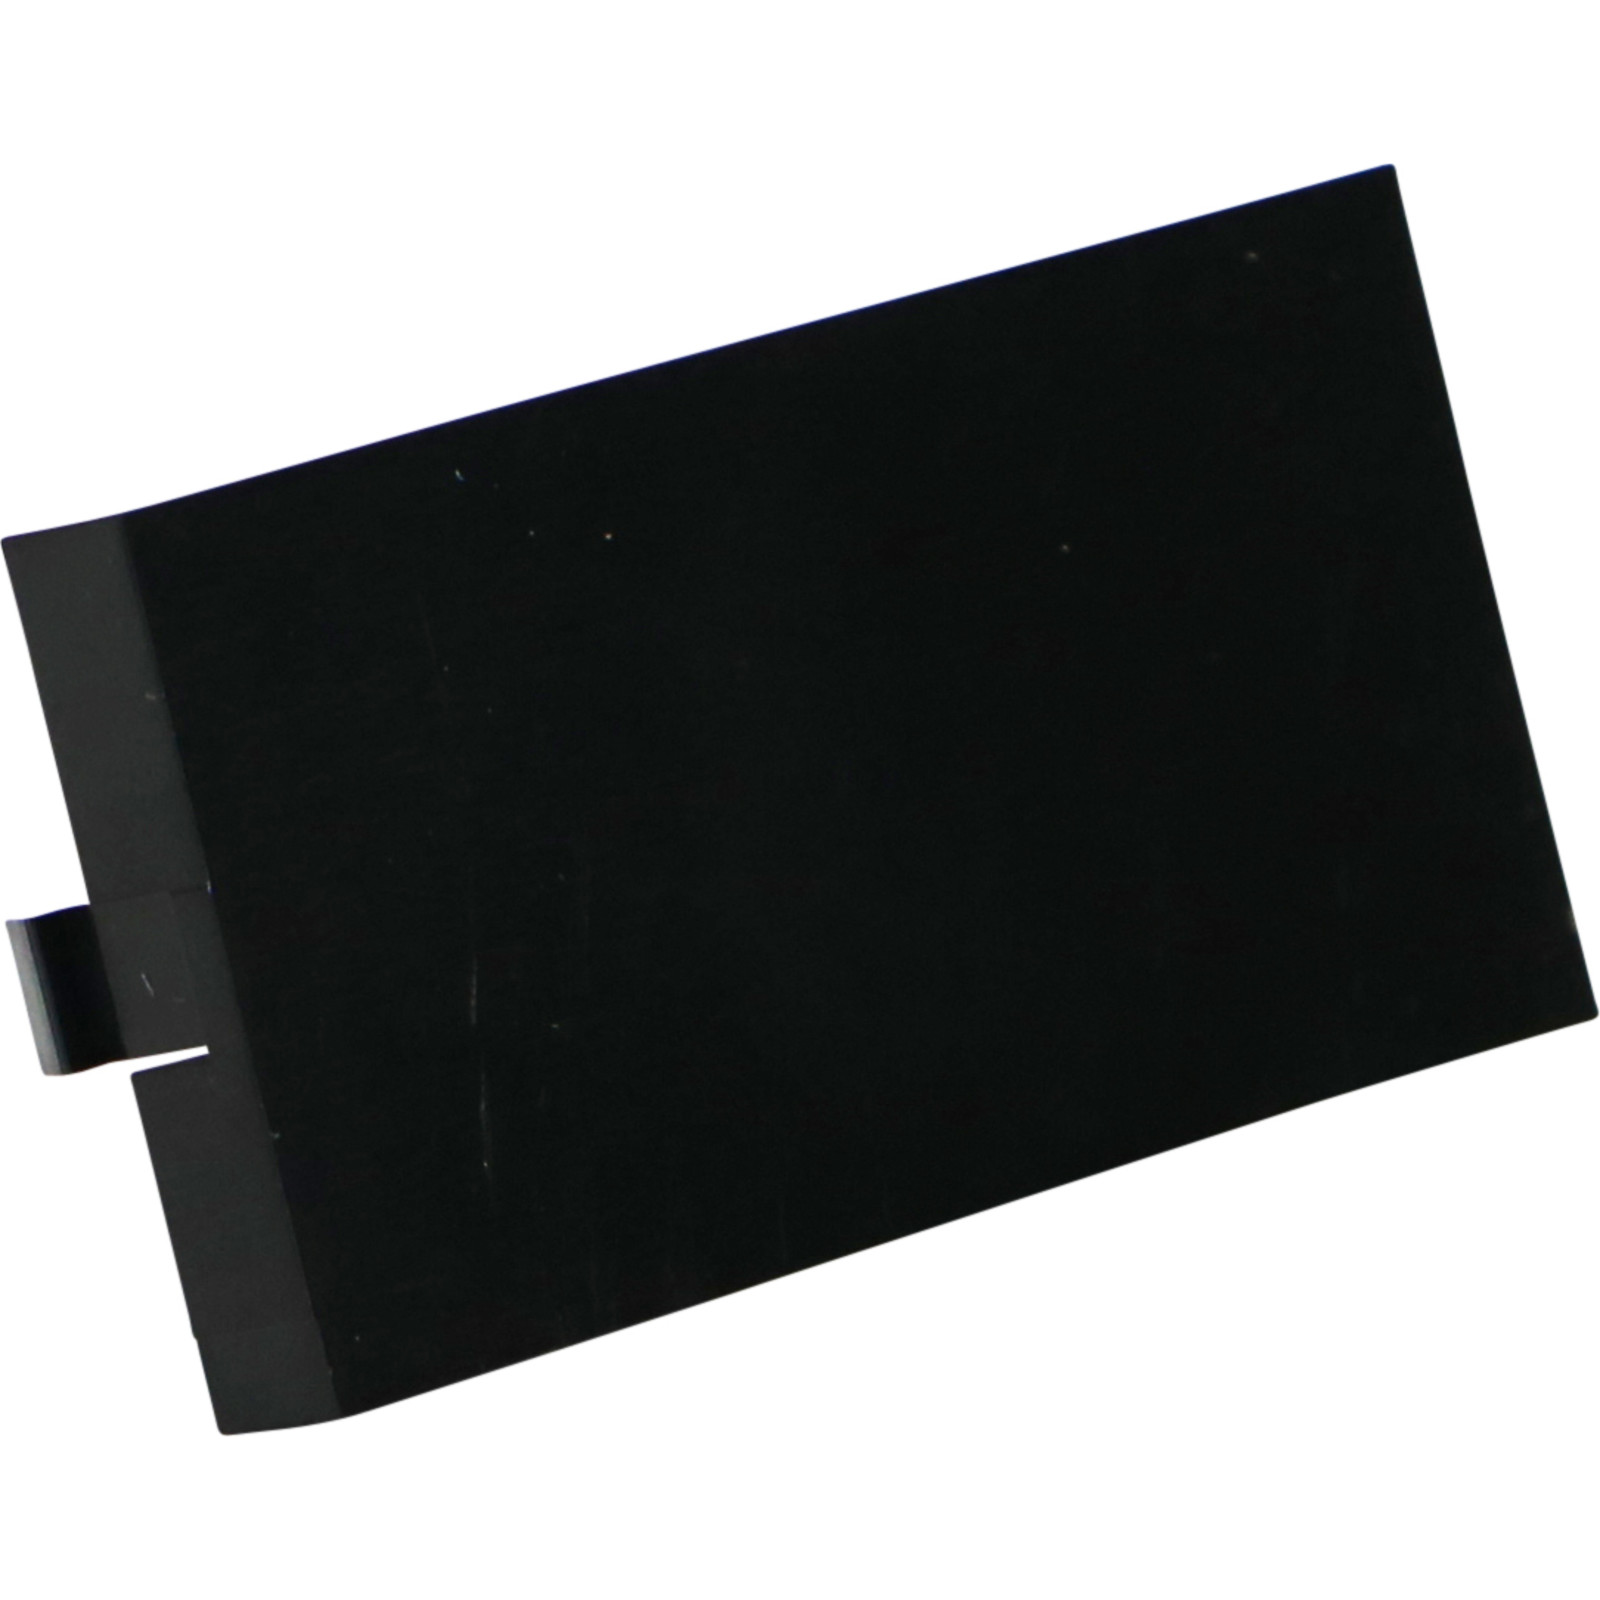 Plaque obturatrice Excel noire pleine largeur (25mm)